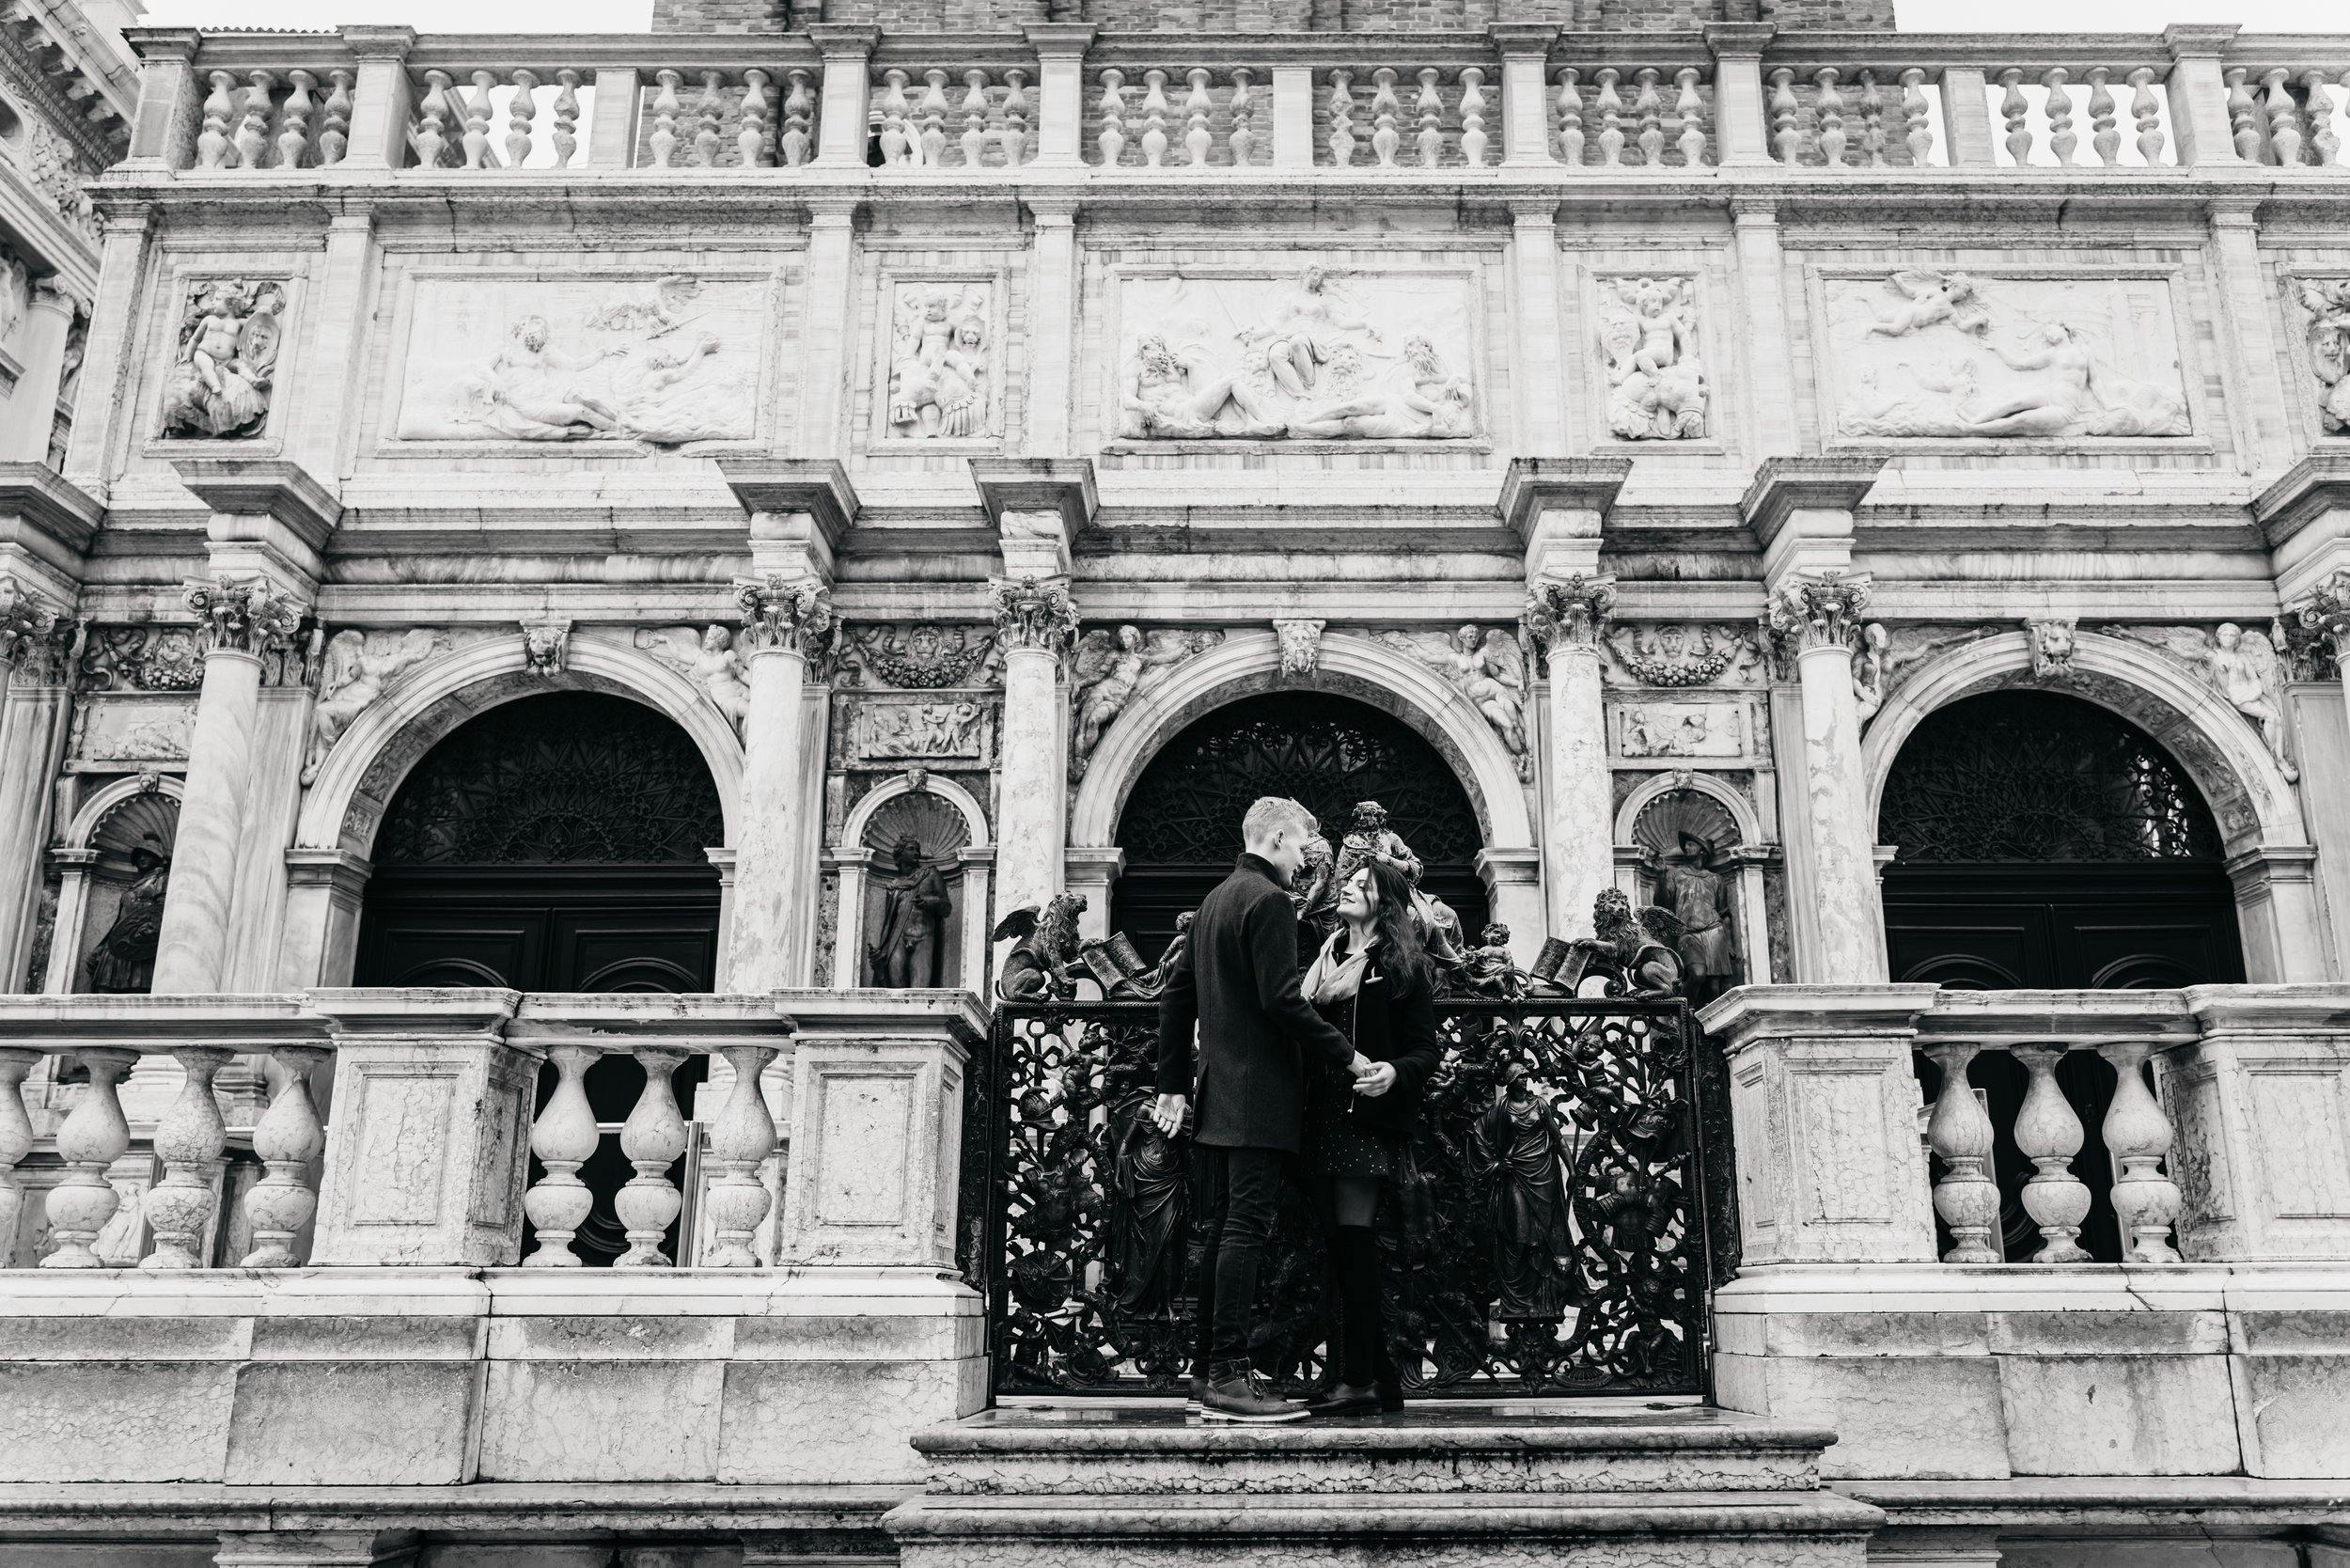 Photographer in Venice